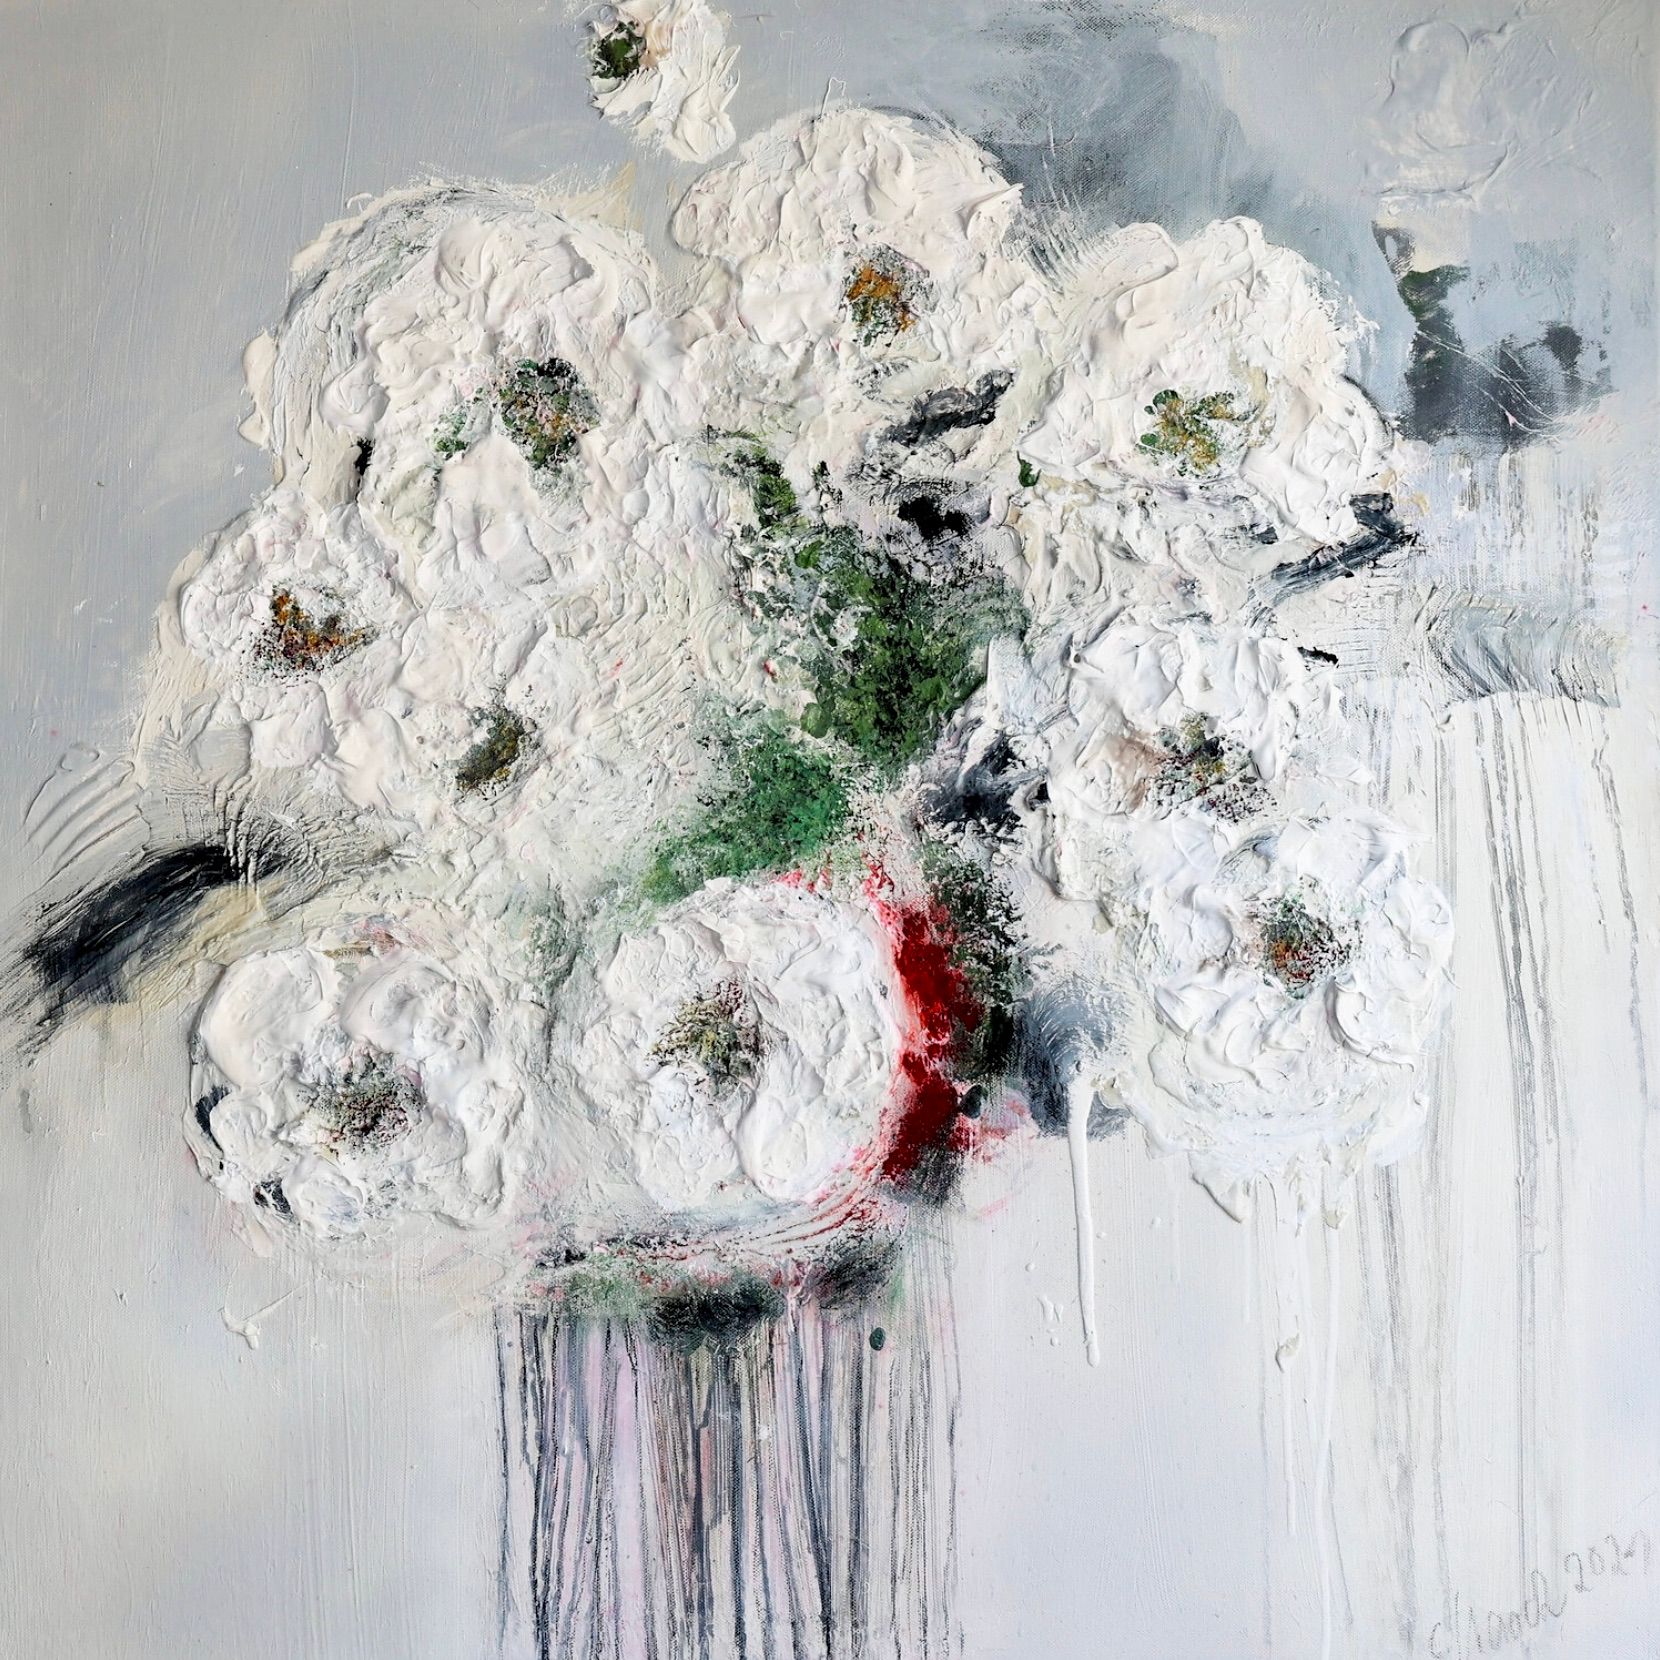 Dans "Im Rausch der Blumen 3" (L'ivresse des fleurs 3) de Christa Haack, la peinture florale expressionniste abstraite est dominée par les couleurs blanc, beige, vert et rouge.